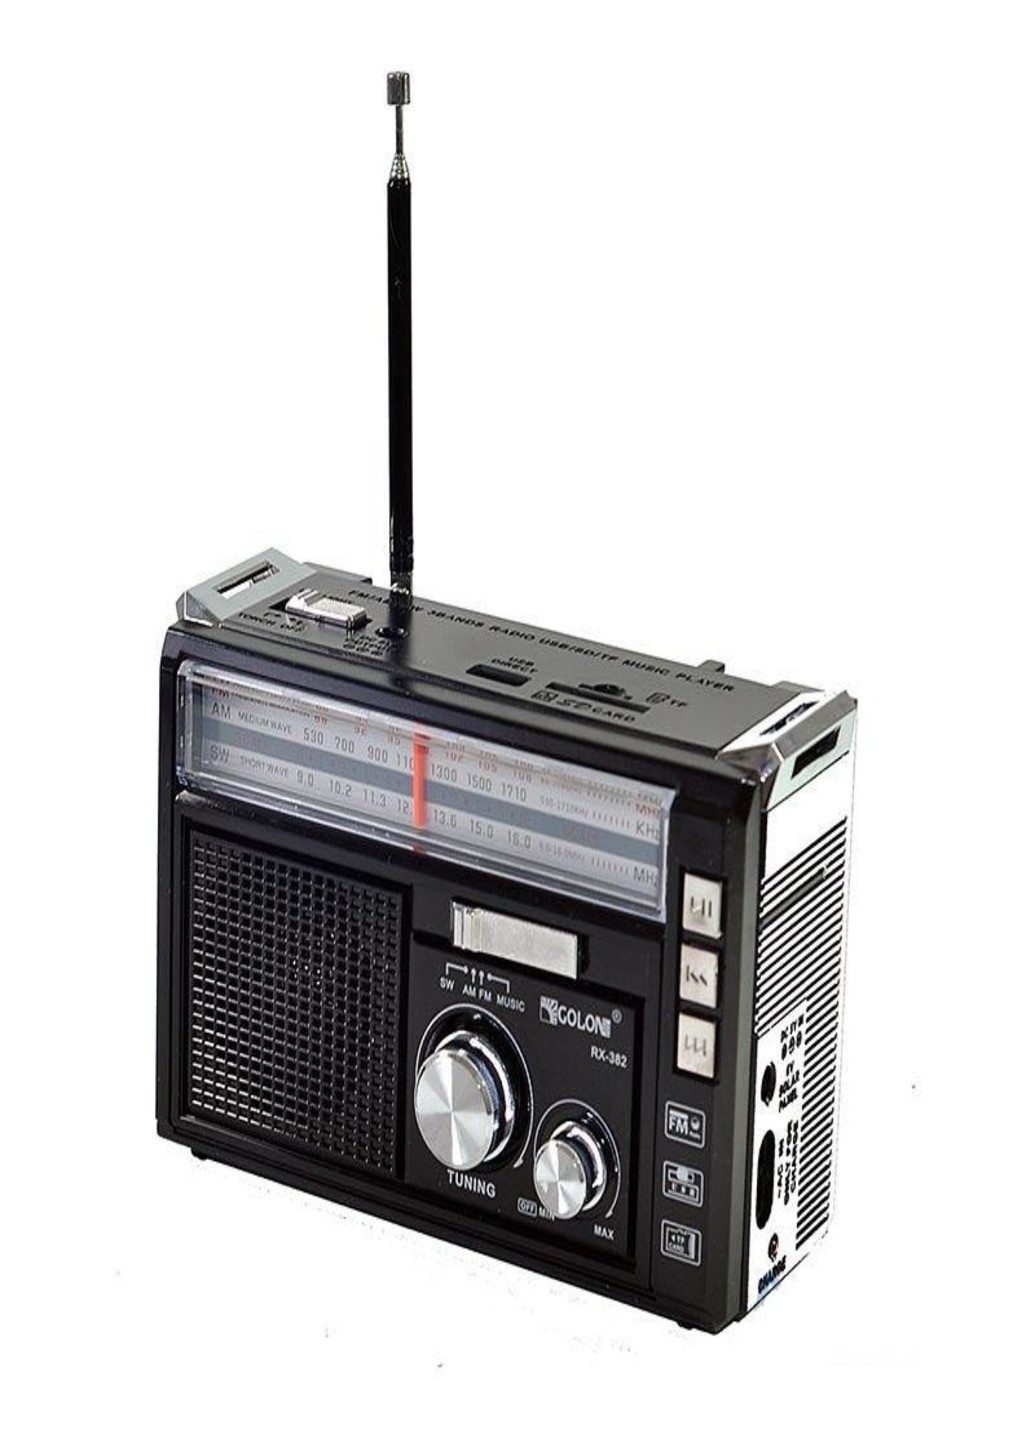 Радиоприемник USB/SD Golon RX-382 радио с MP3 и LED фонариком Черный Art (255679170)